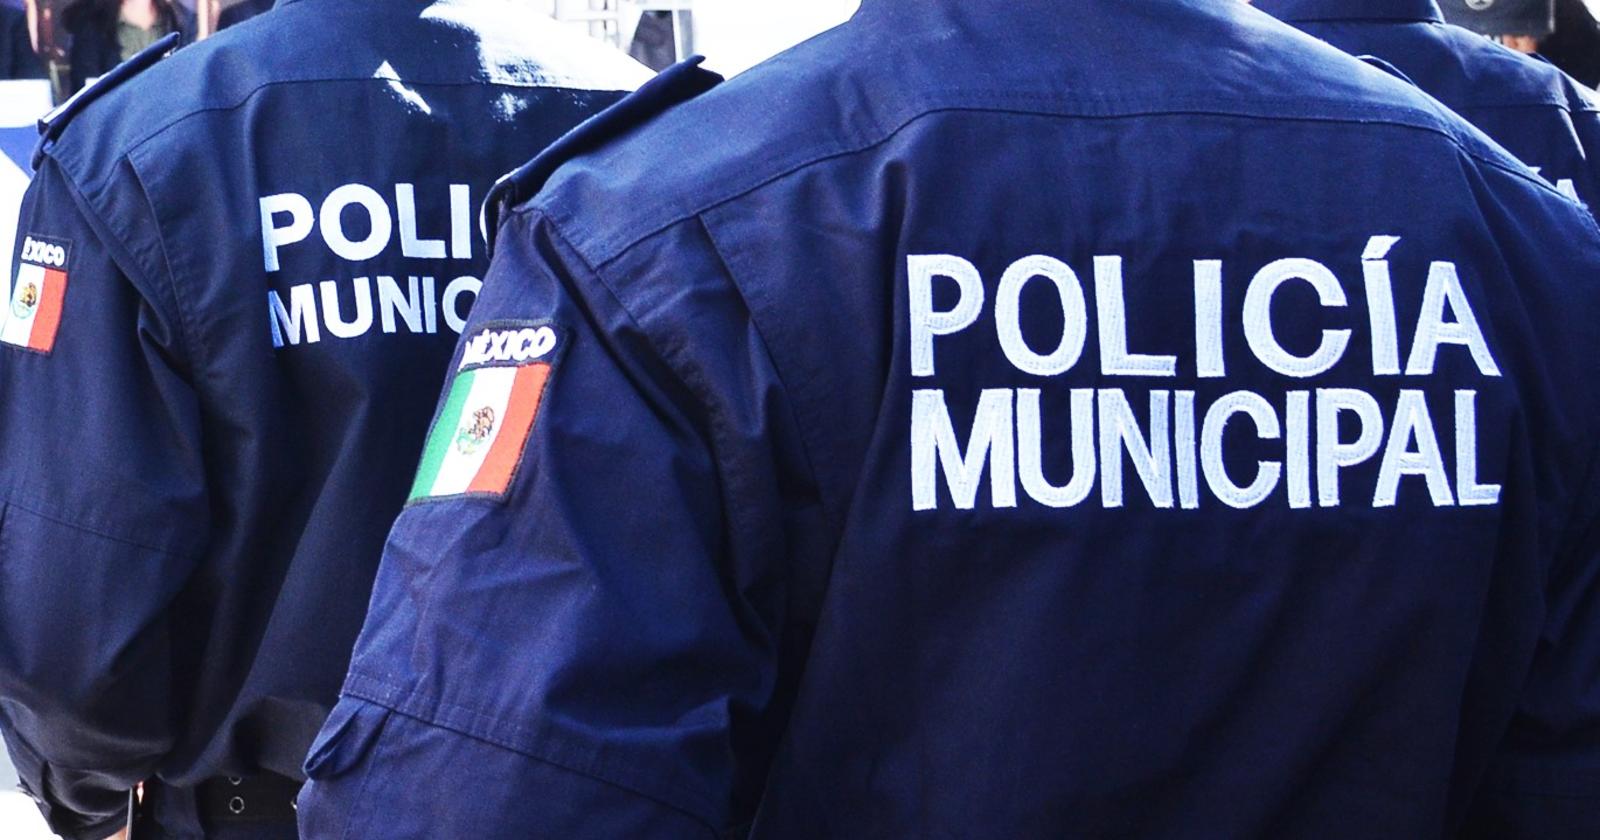 Denuncian abuso policiaco en Torreón